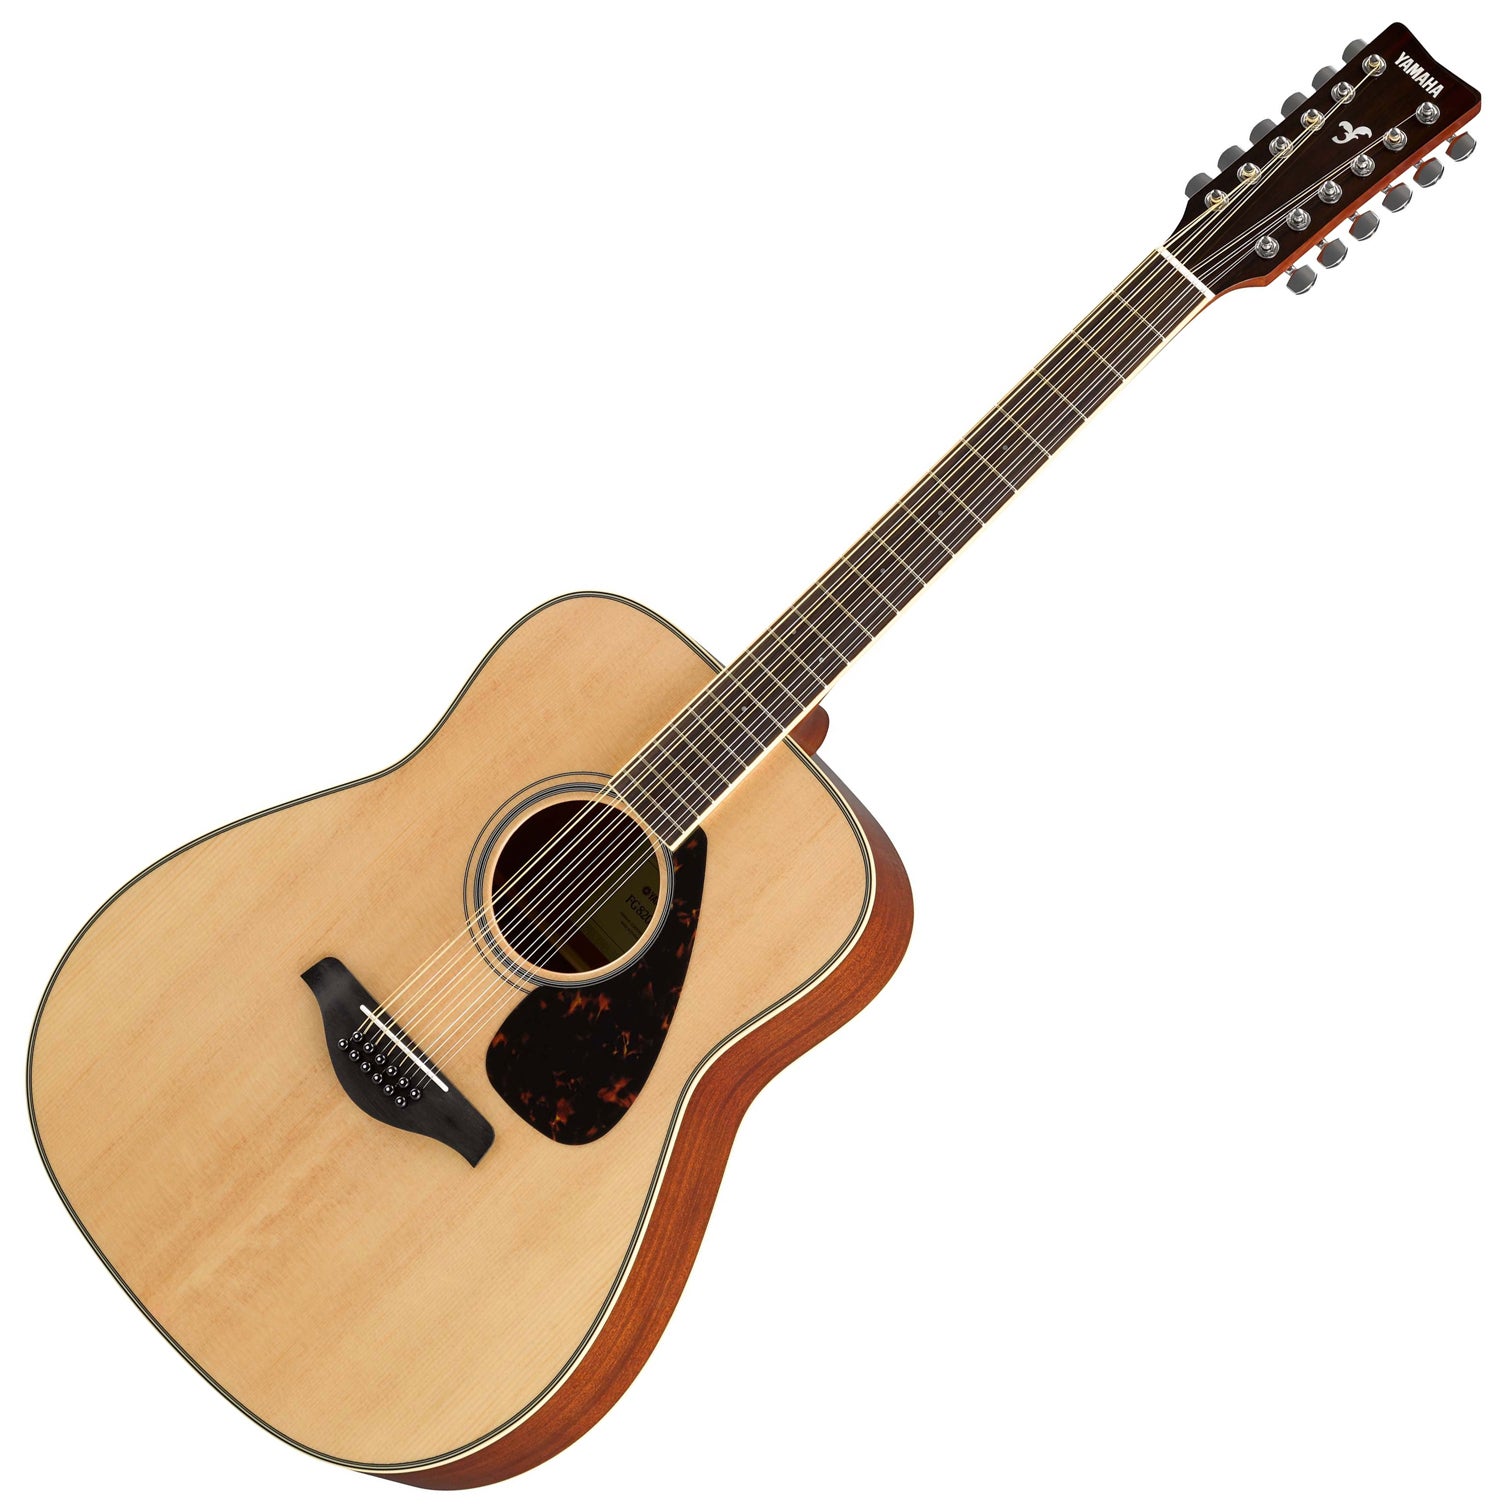 Yamaha Fg820 Nt Solid Top 12-string Acoustic Guitar, Natural 